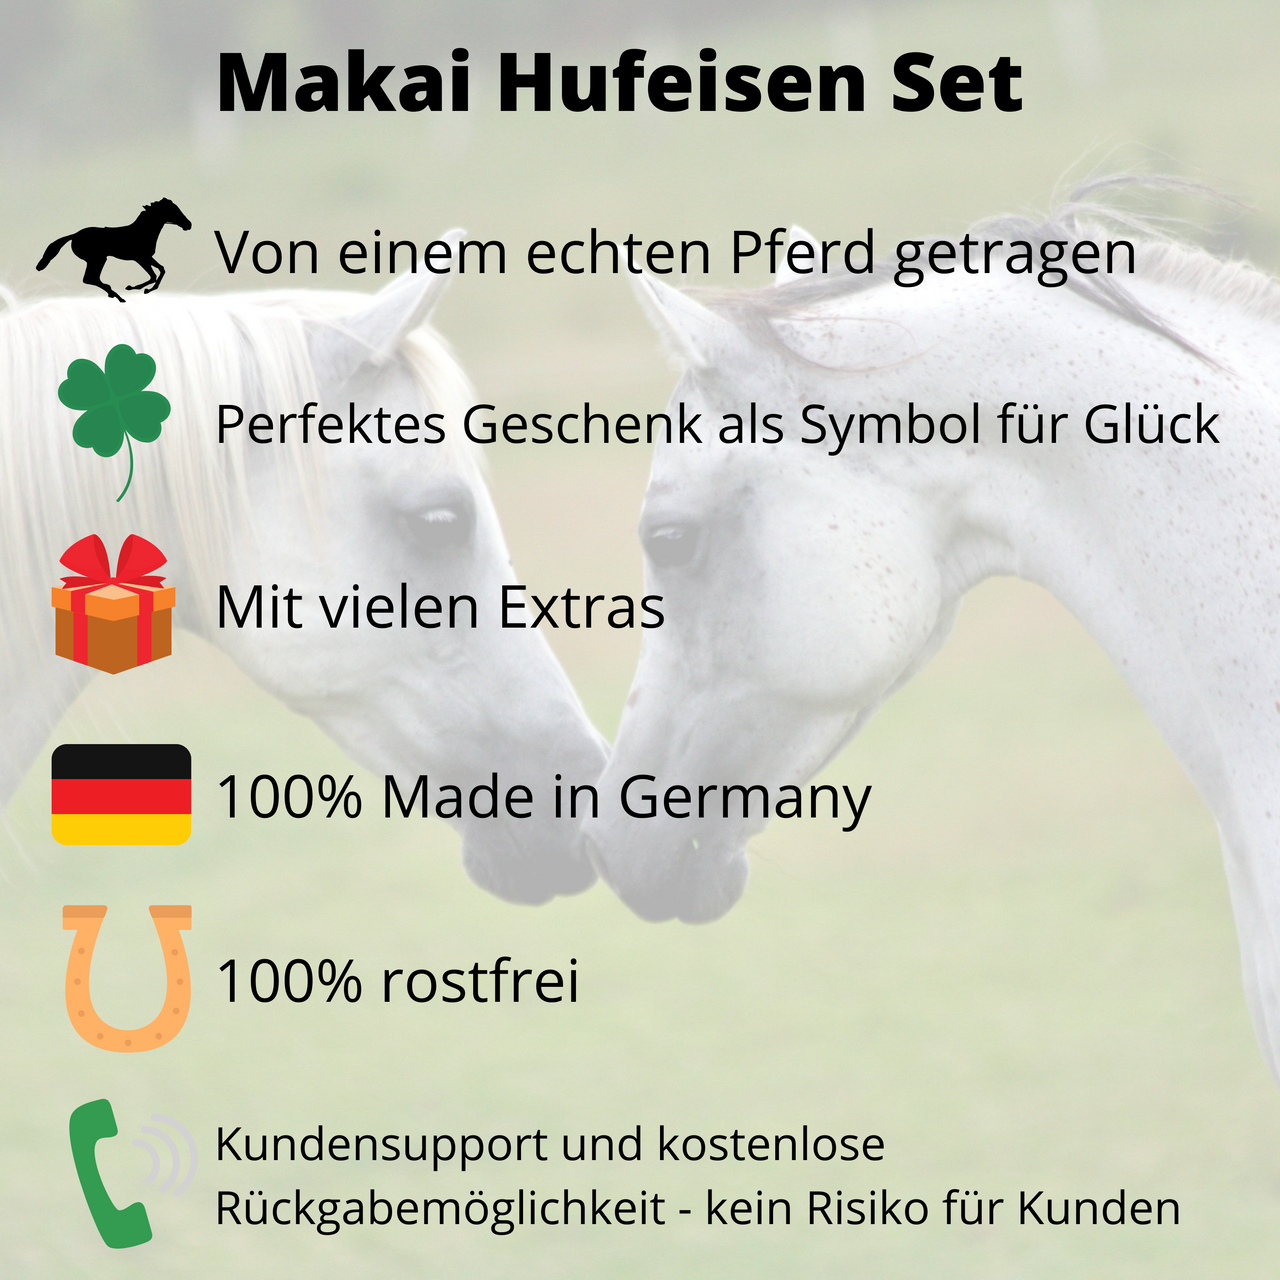 Makai Hufeisen Set: von einem echten Pferd getragen, perfektes Geschenk als Symbol für Glück, mit vielen Extras, 100% Made in Germany, 100% rostfrei, Kundensupport deutsch und kostenlose Rückgabemöglichkeit.